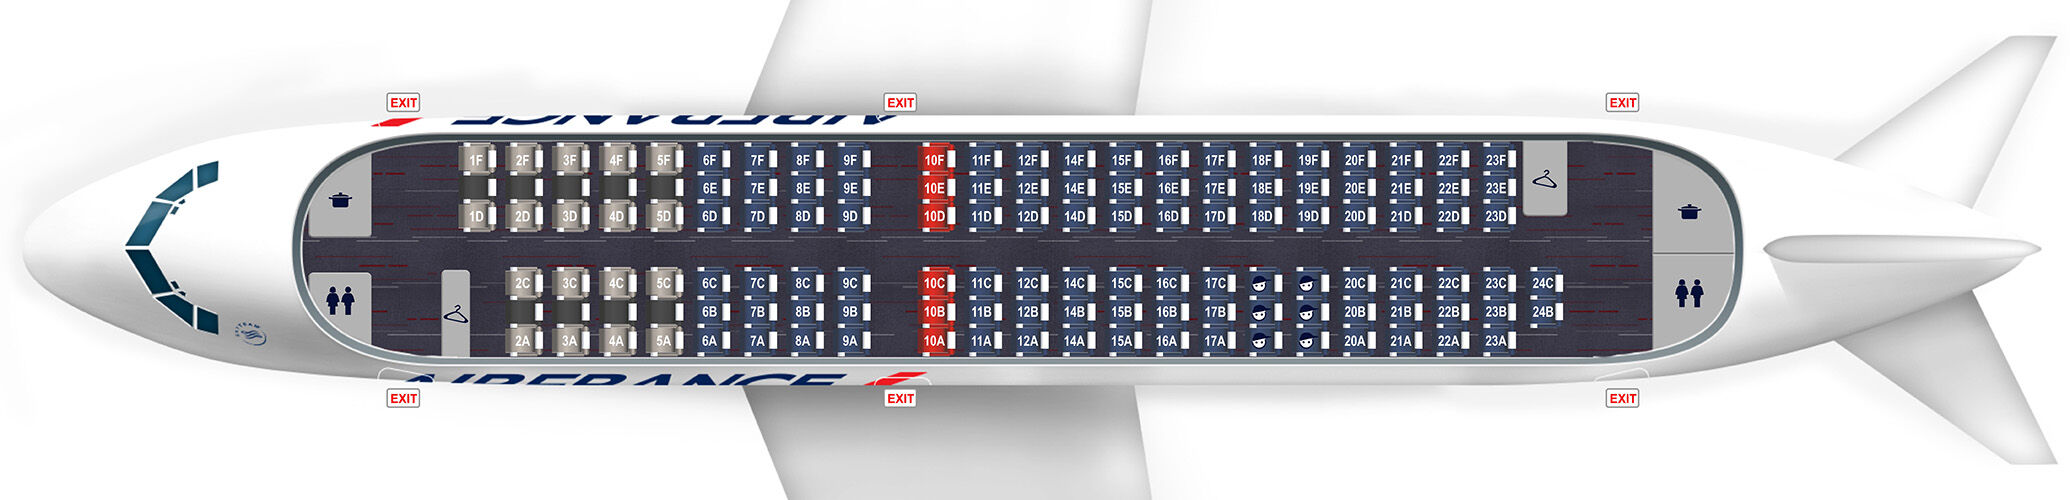 A318 Airbus Sitzplan